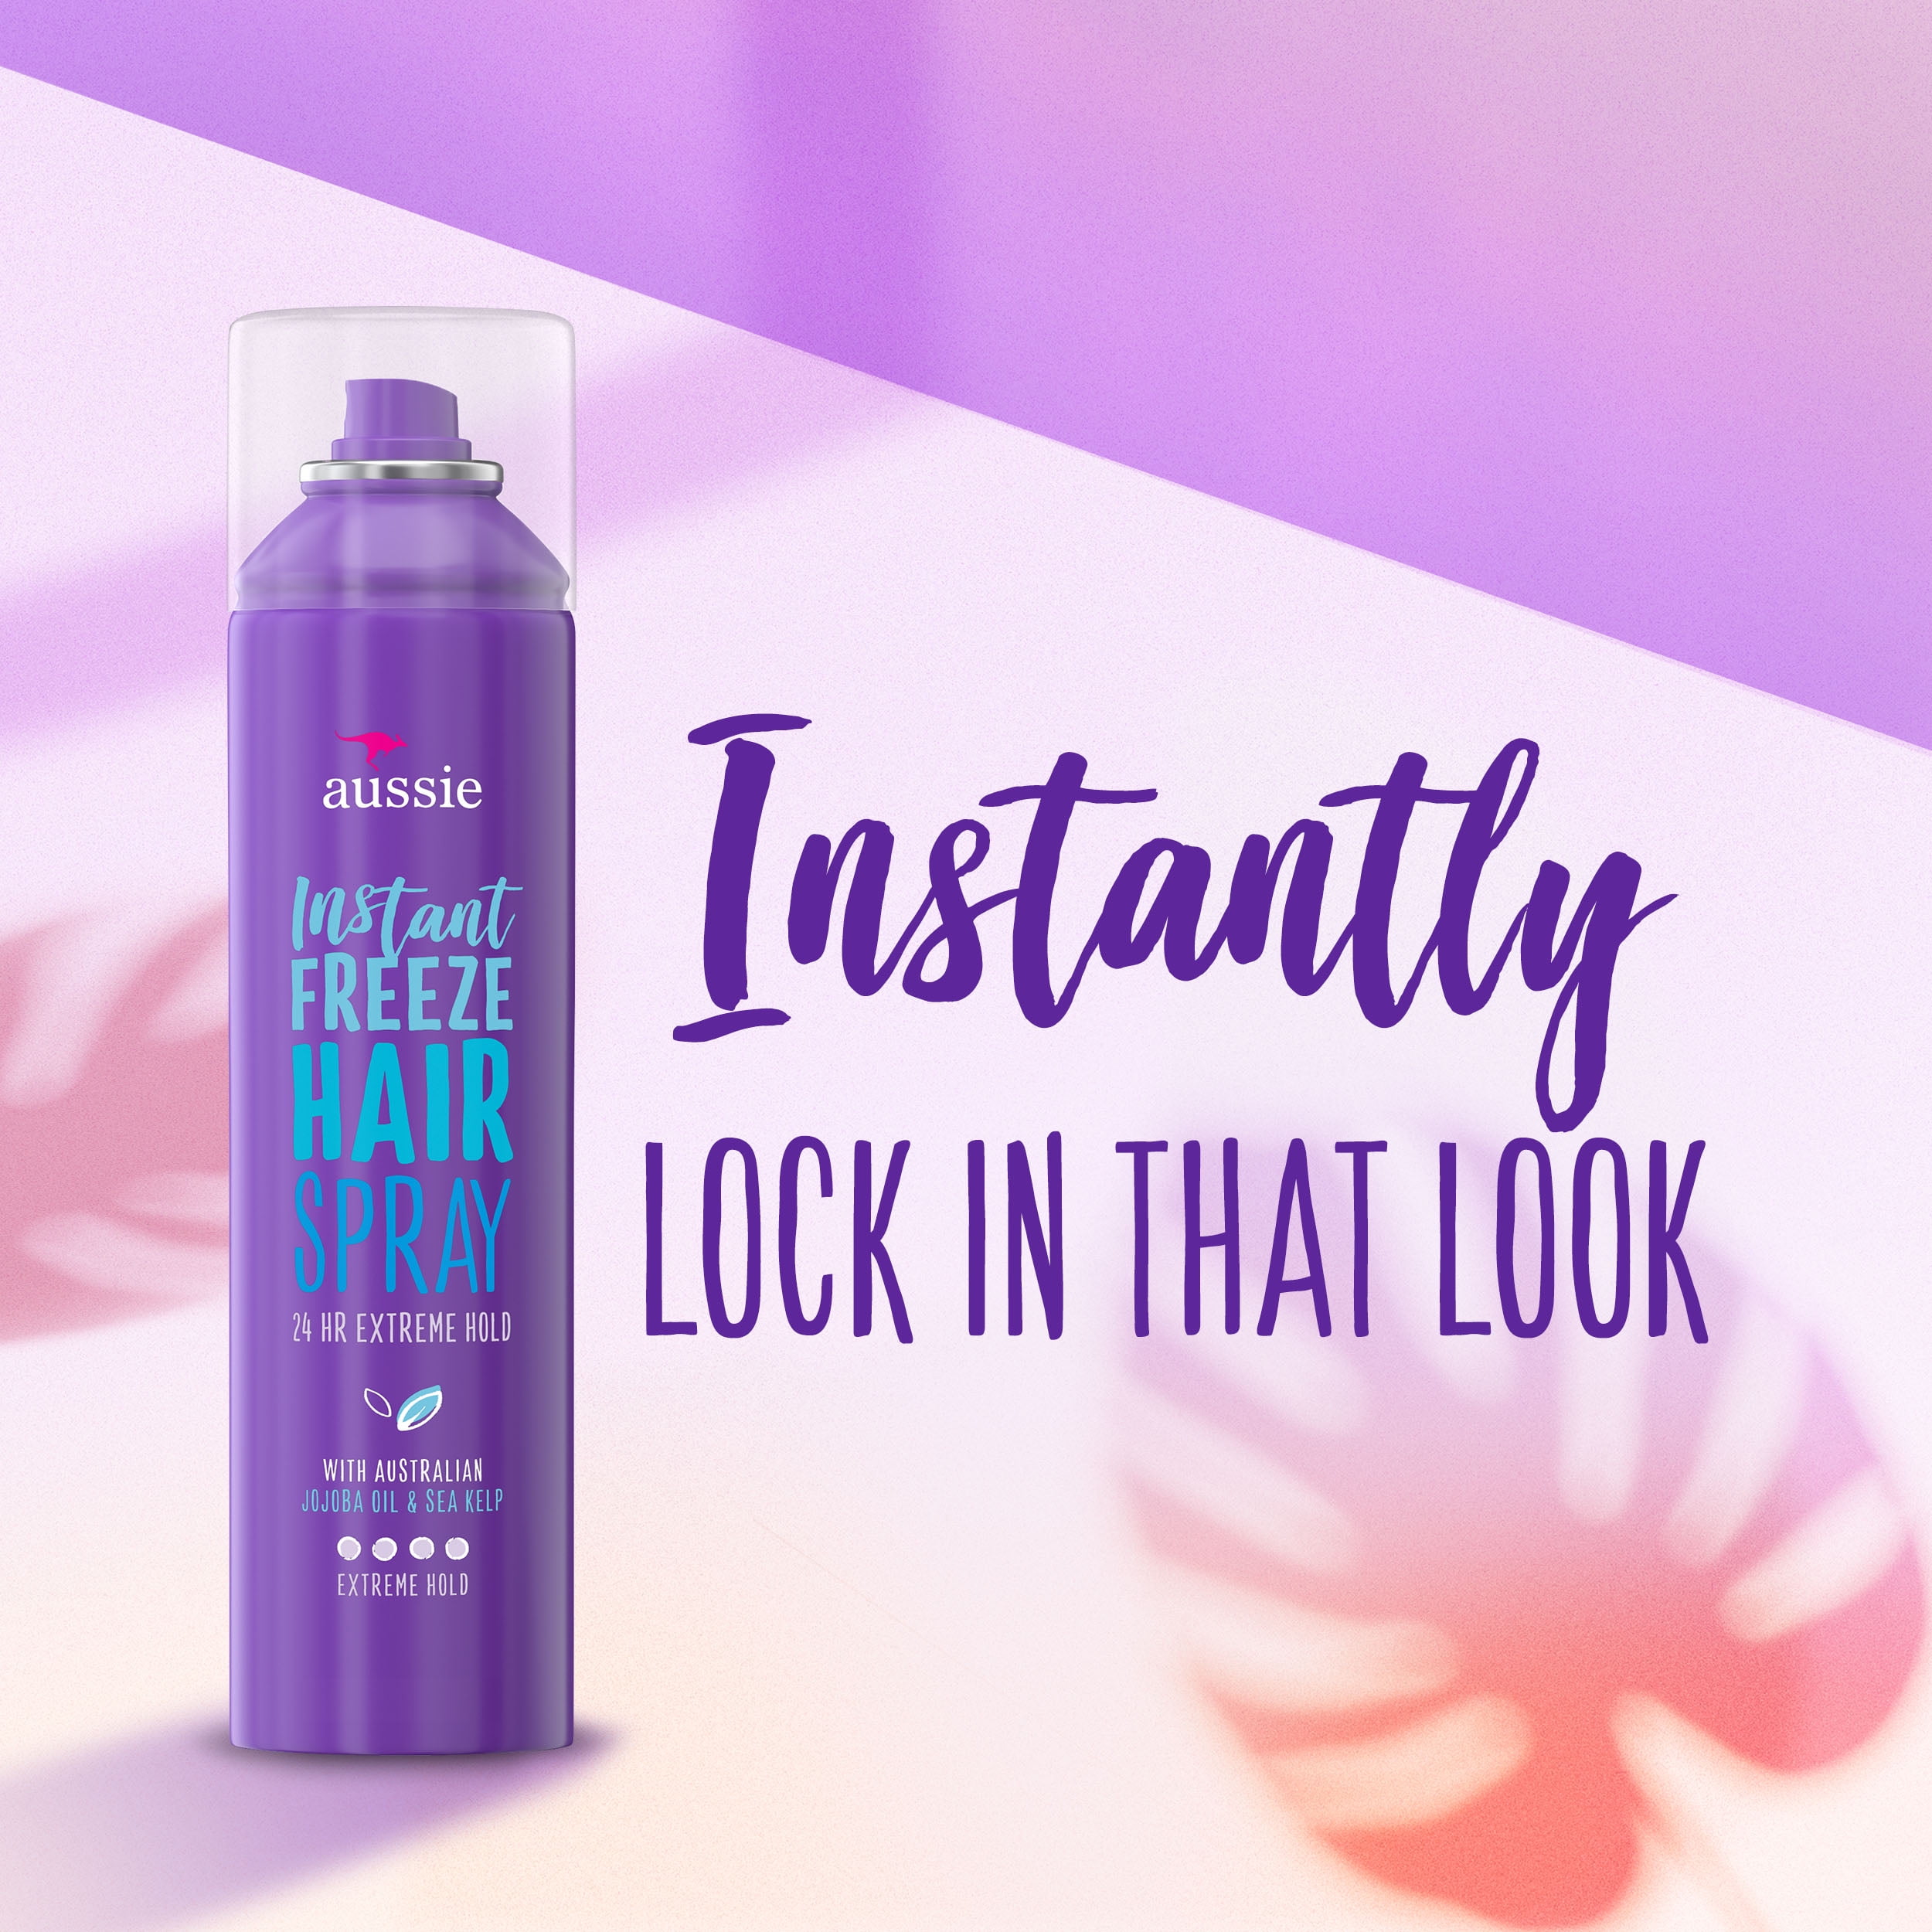 aussie instant freeze hairspray new formula｜TikTok Search